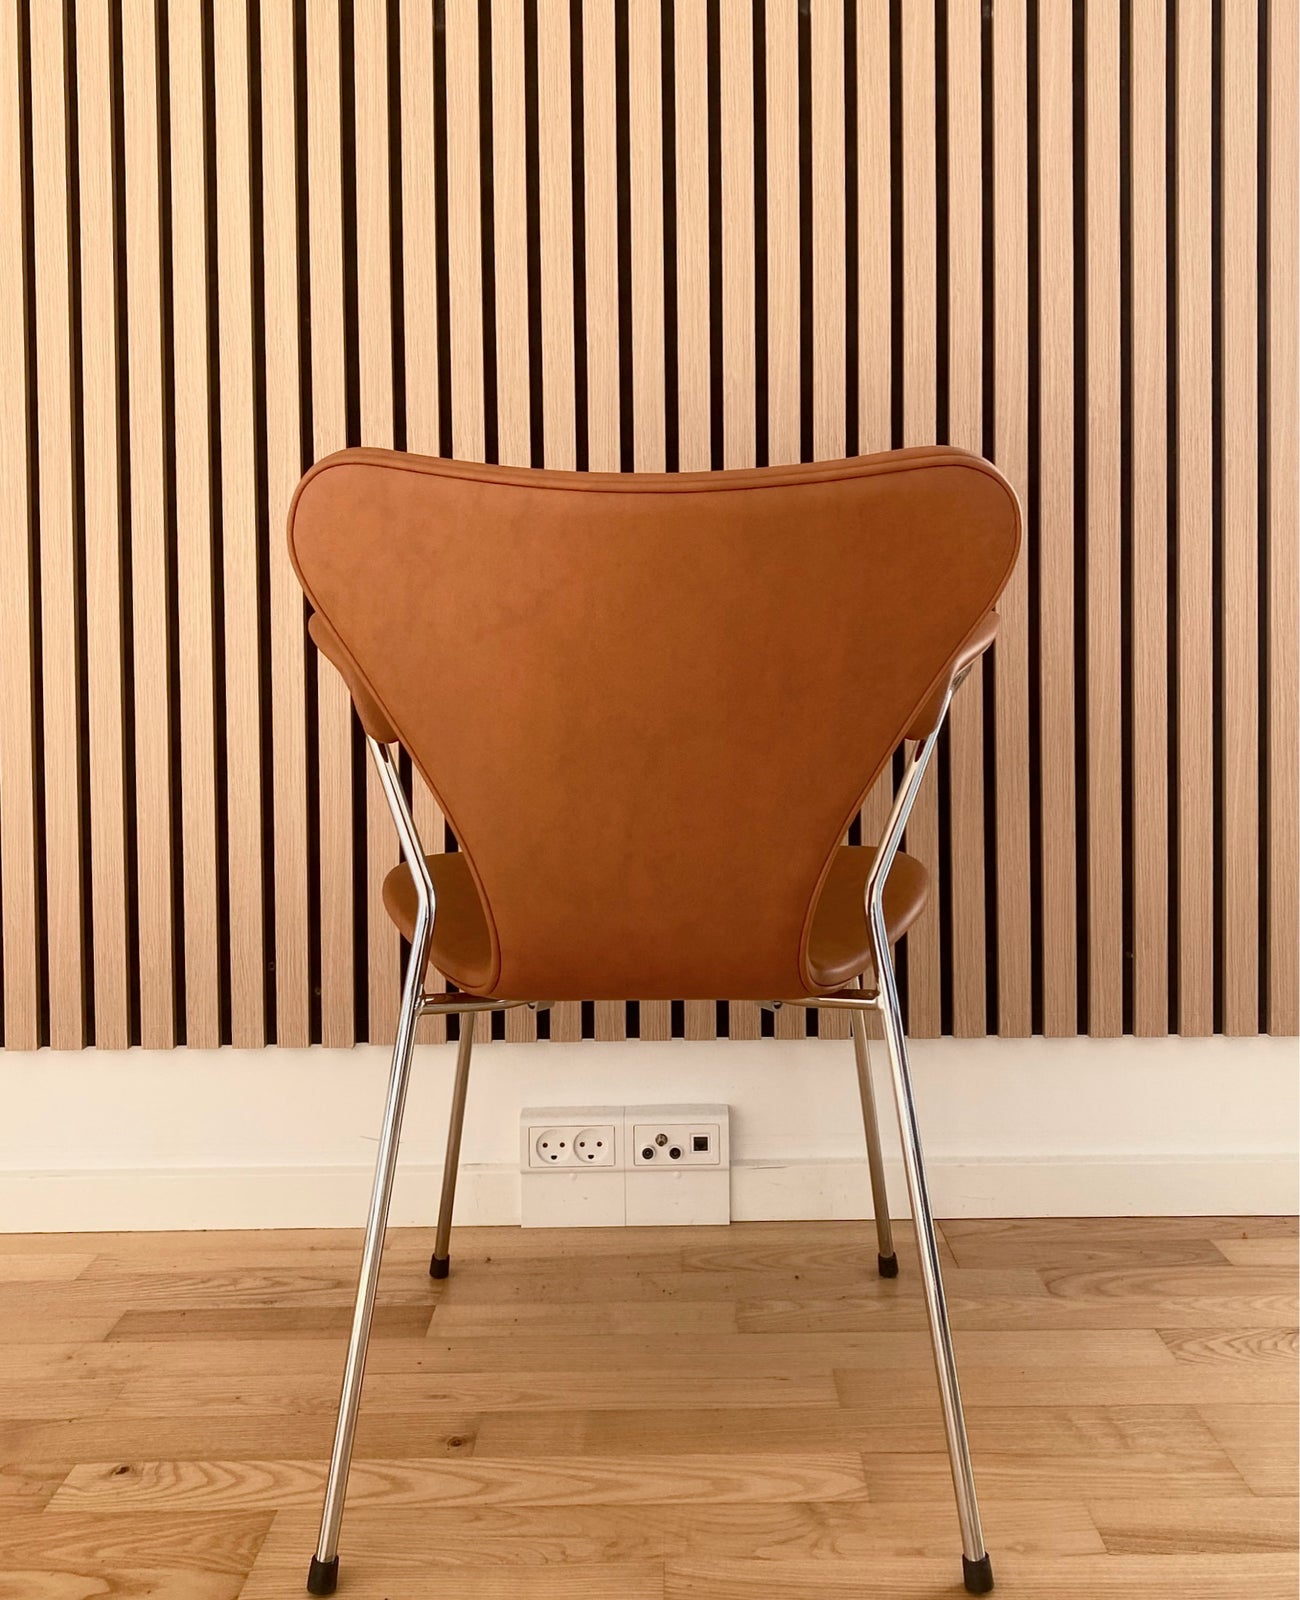 Arne Jacobsen, Syverstole med armlæn I cognac farve, Stole